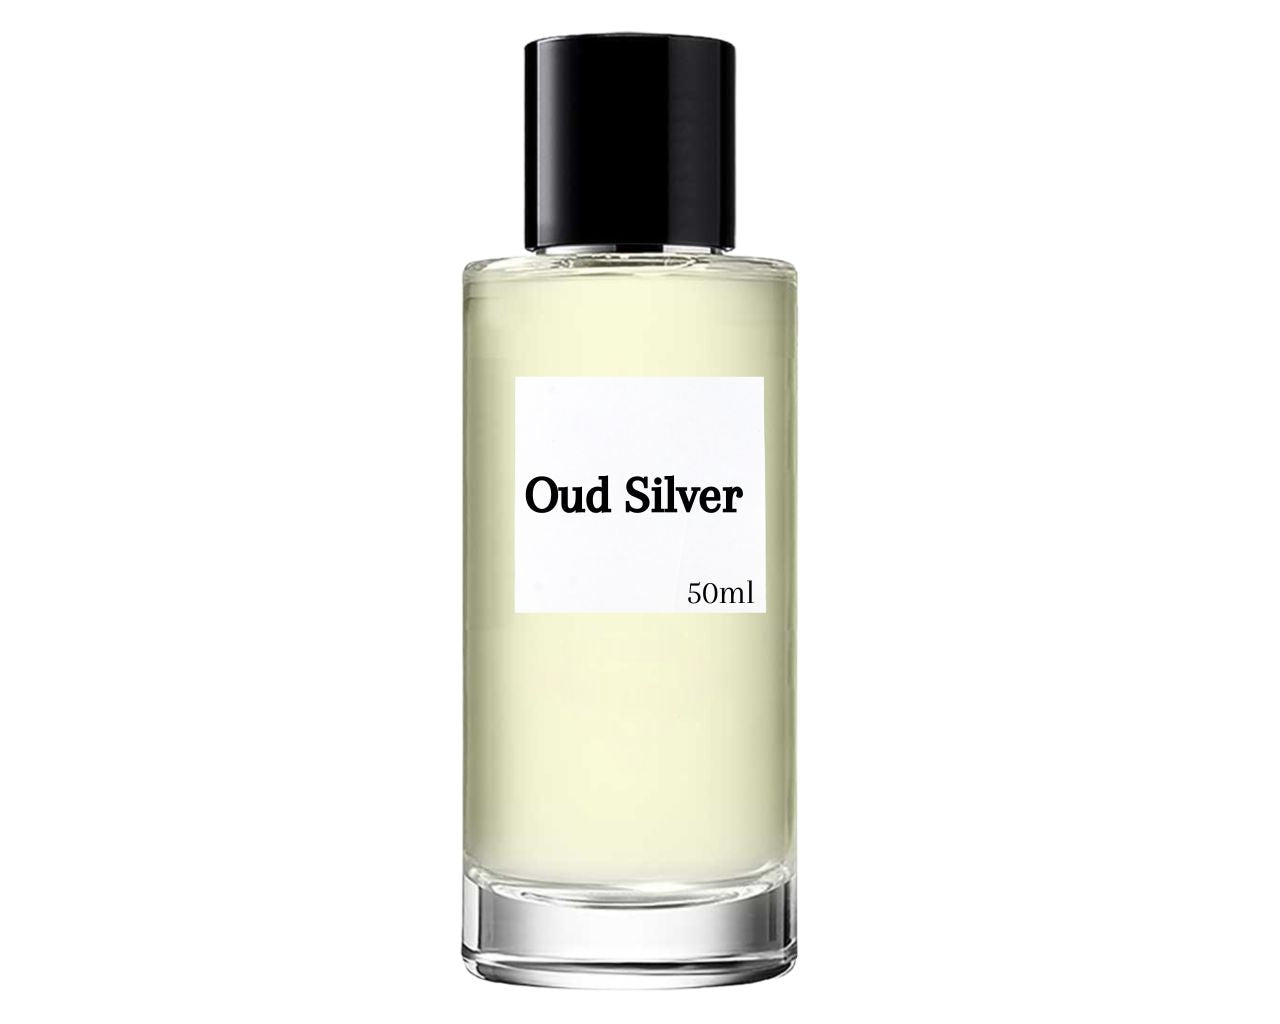 Parfum Oud Silver similaire au bois d'argent